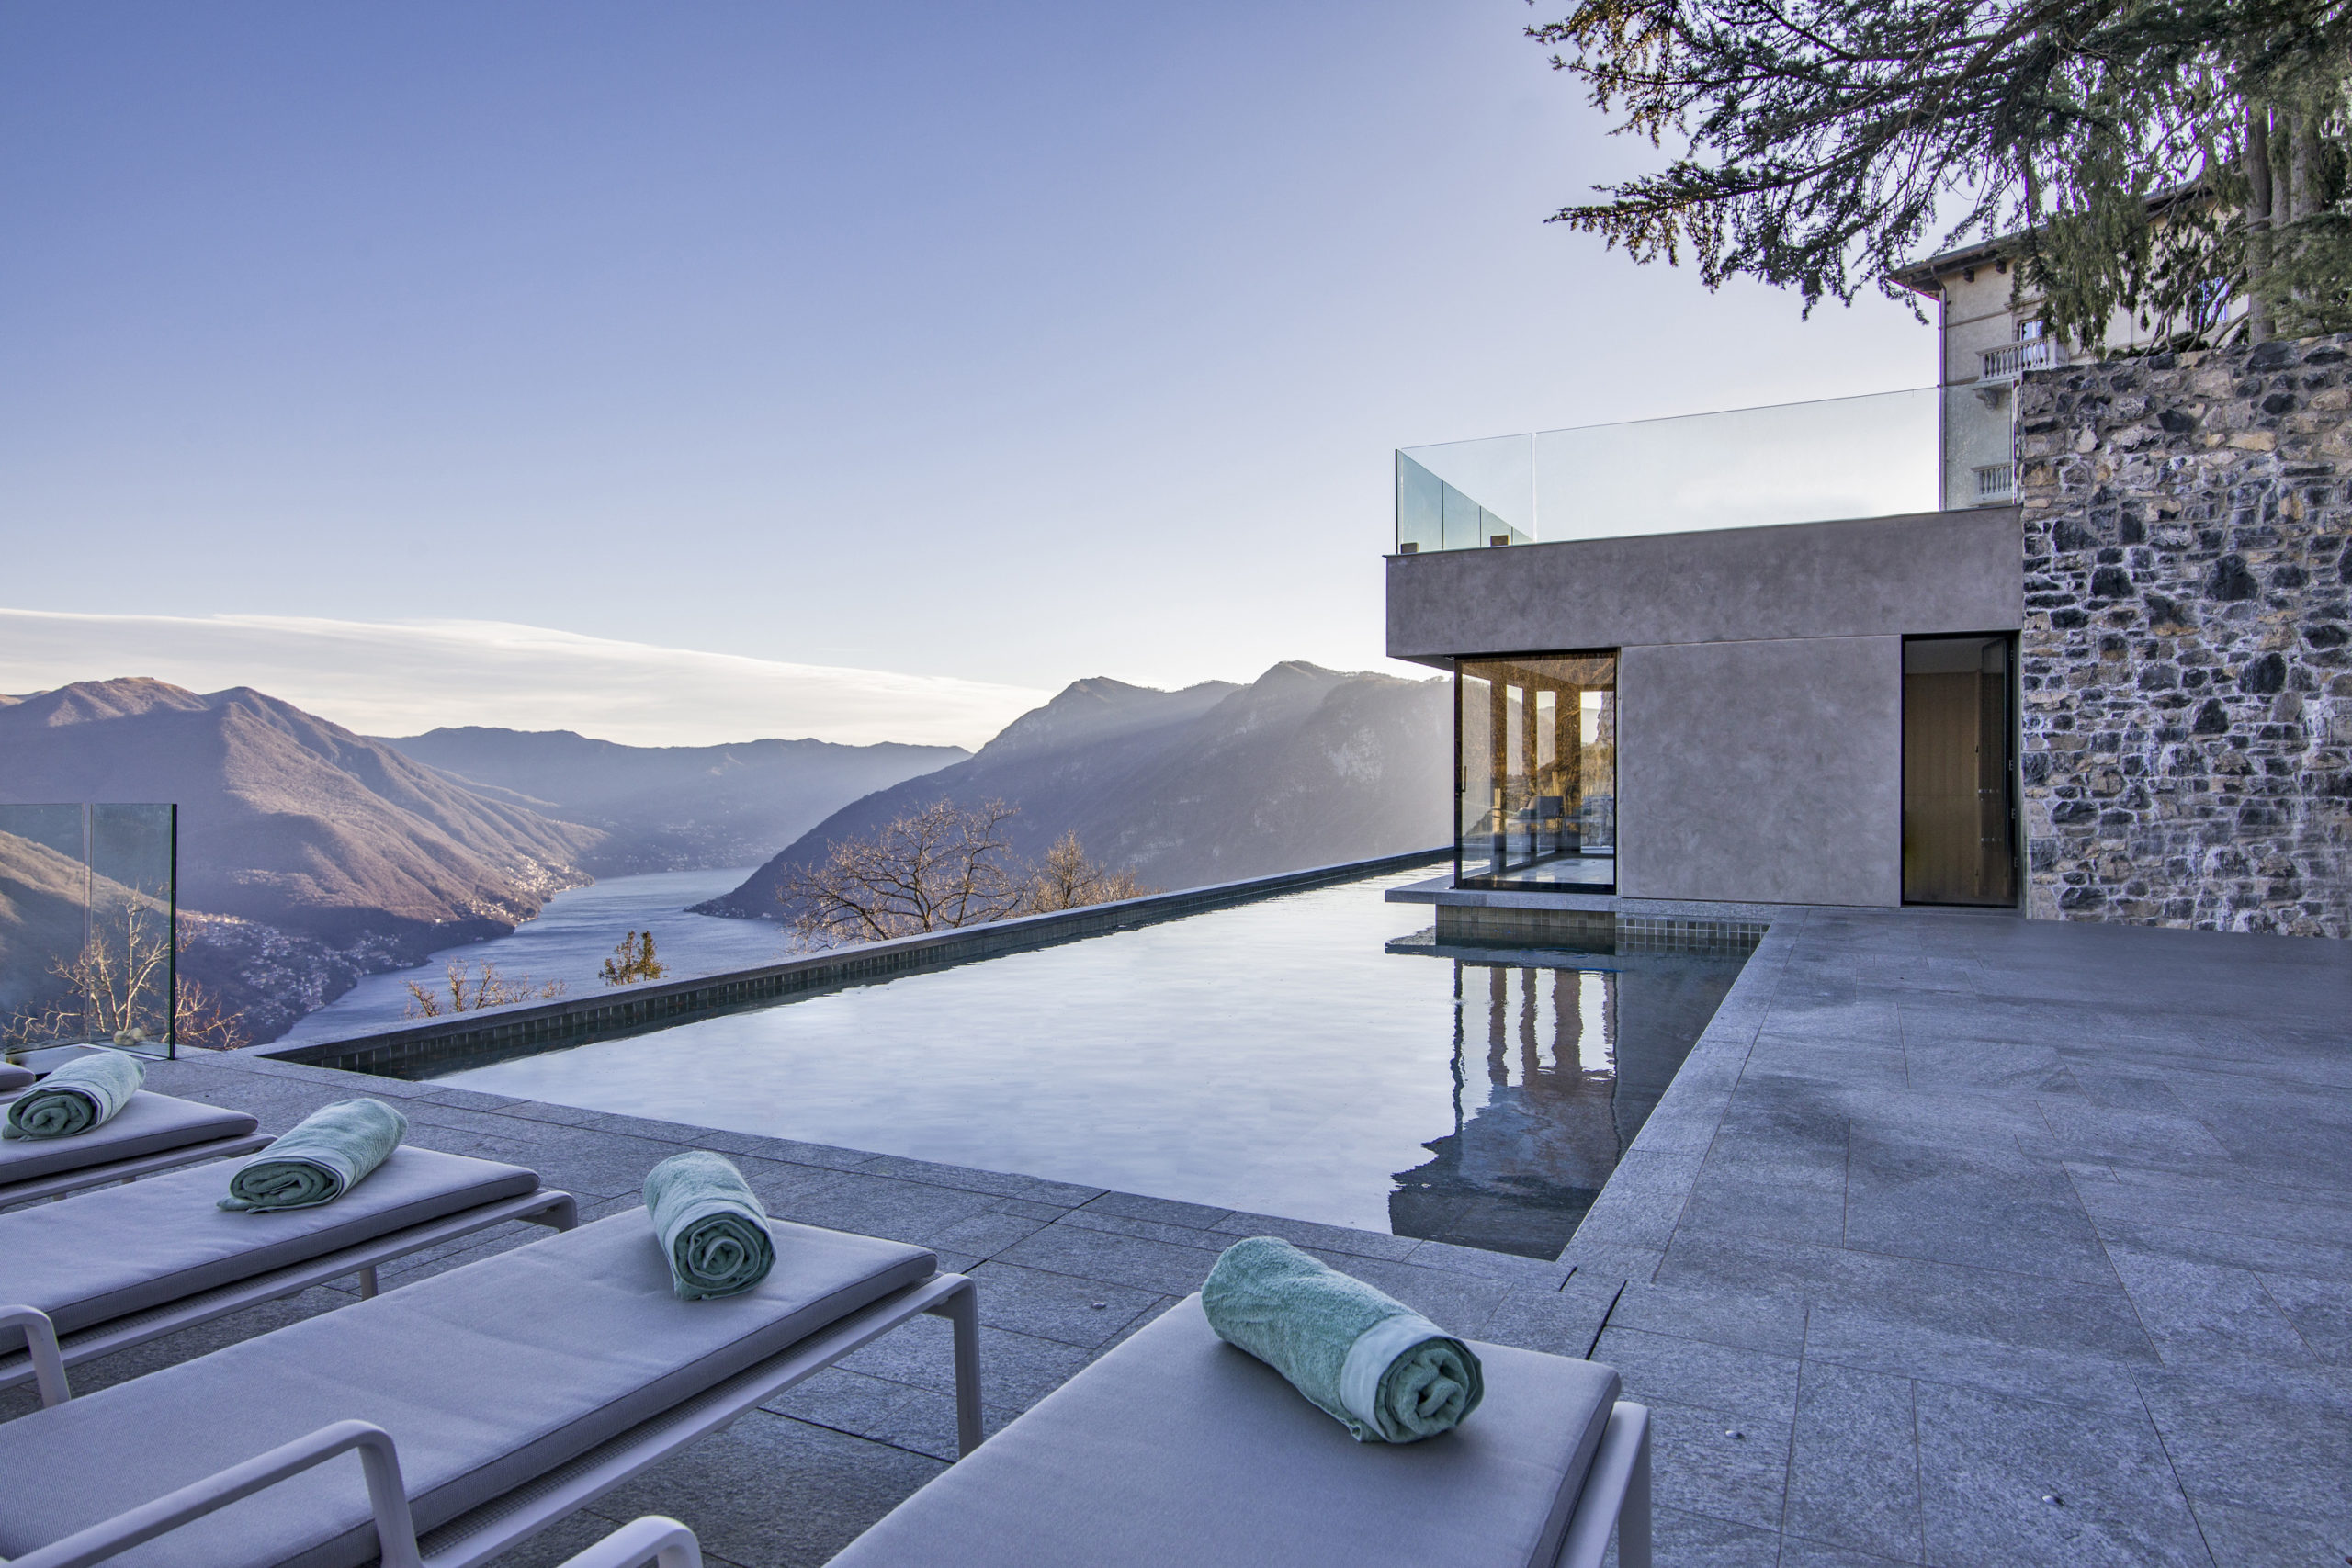  Villa Peduzzi. Lake Como, Italy. Bedrooms 8, Bathrooms 11.